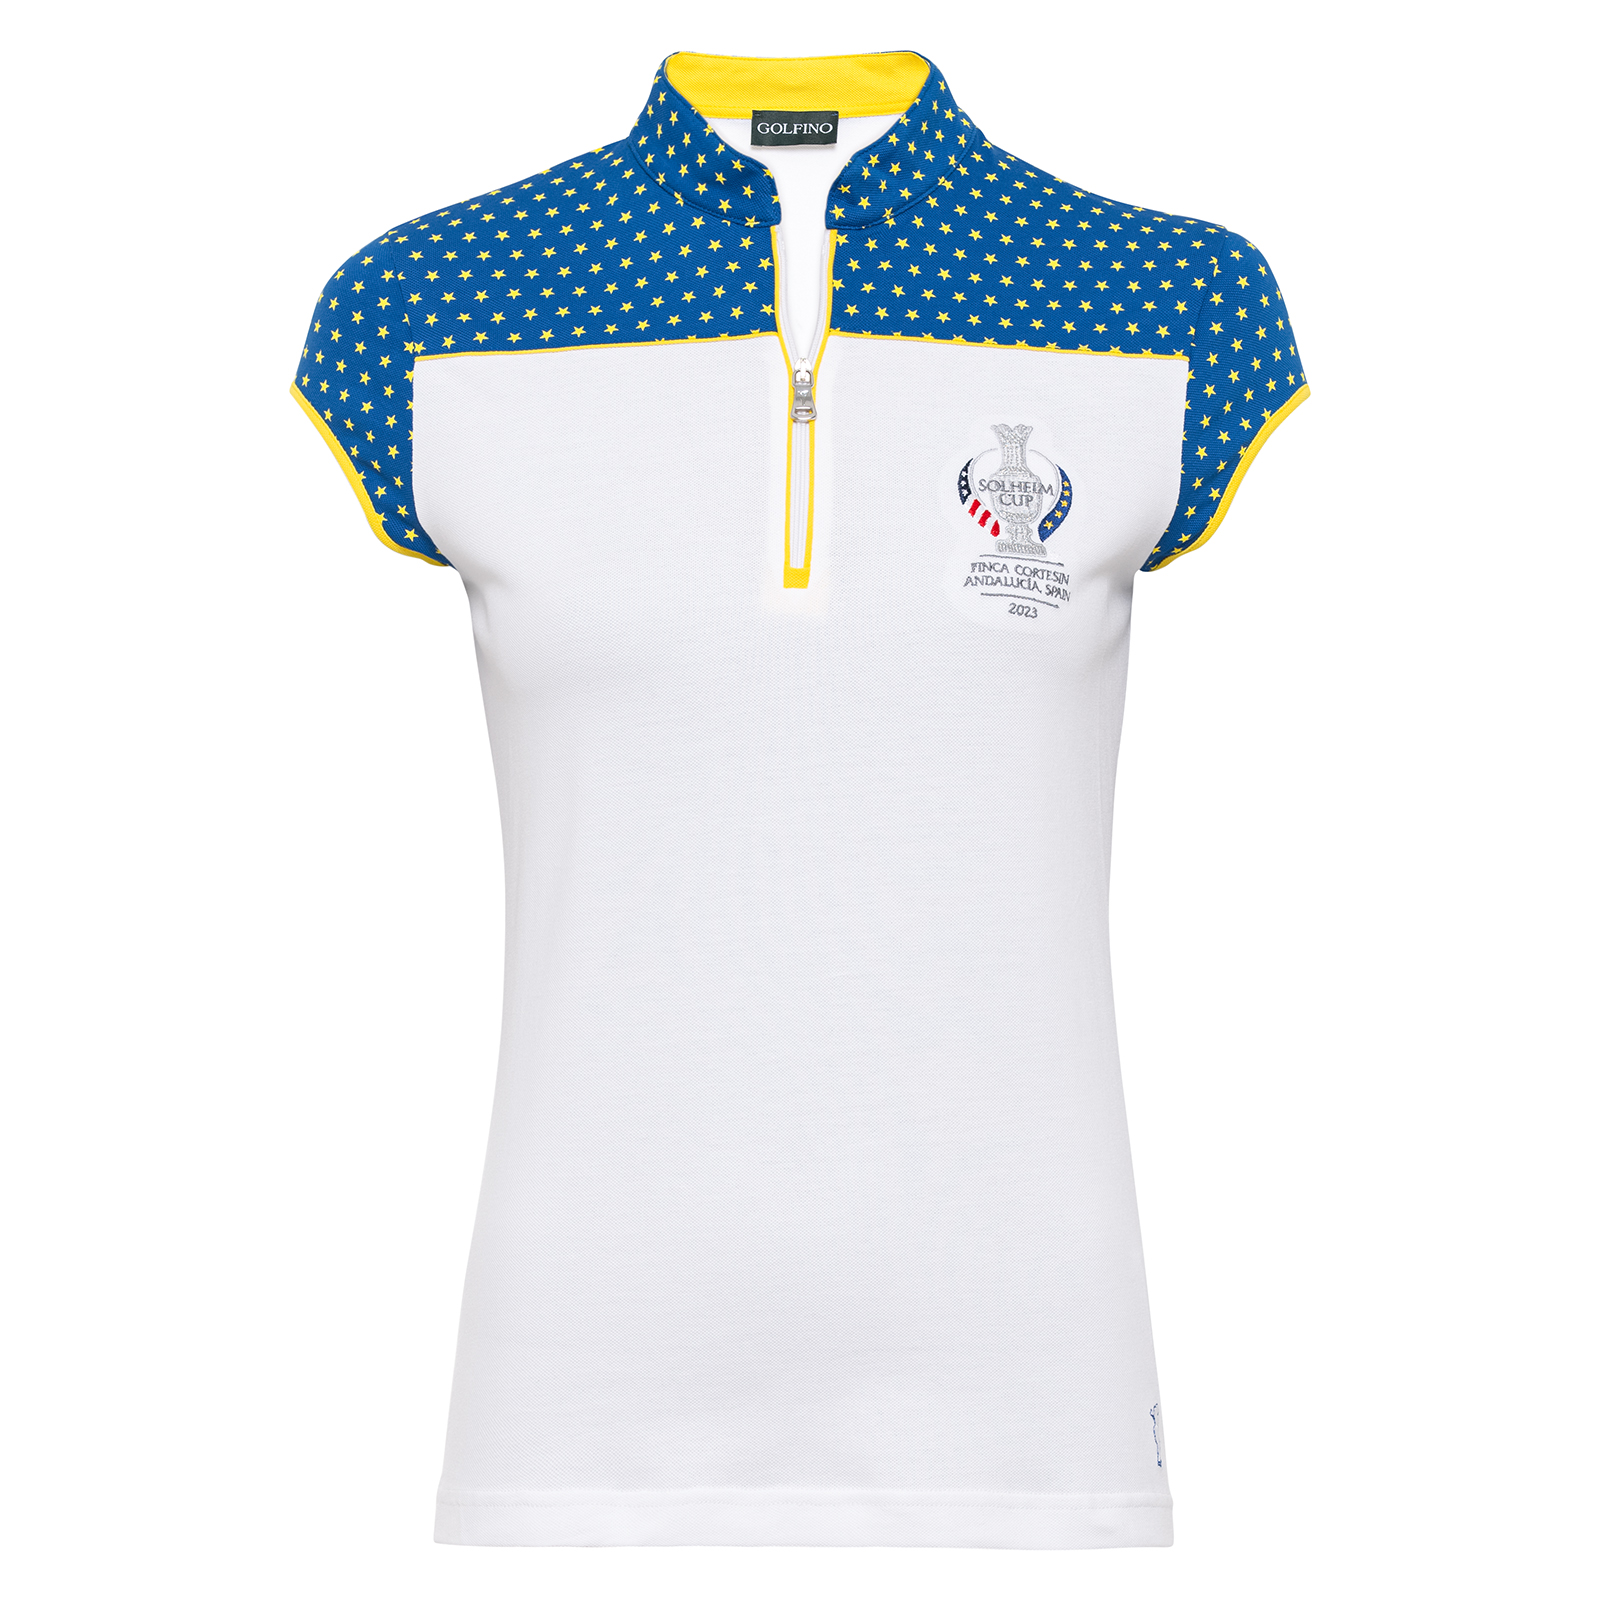 Damen Golf Polo mit Sonnenschutz im Solheim Cup Design